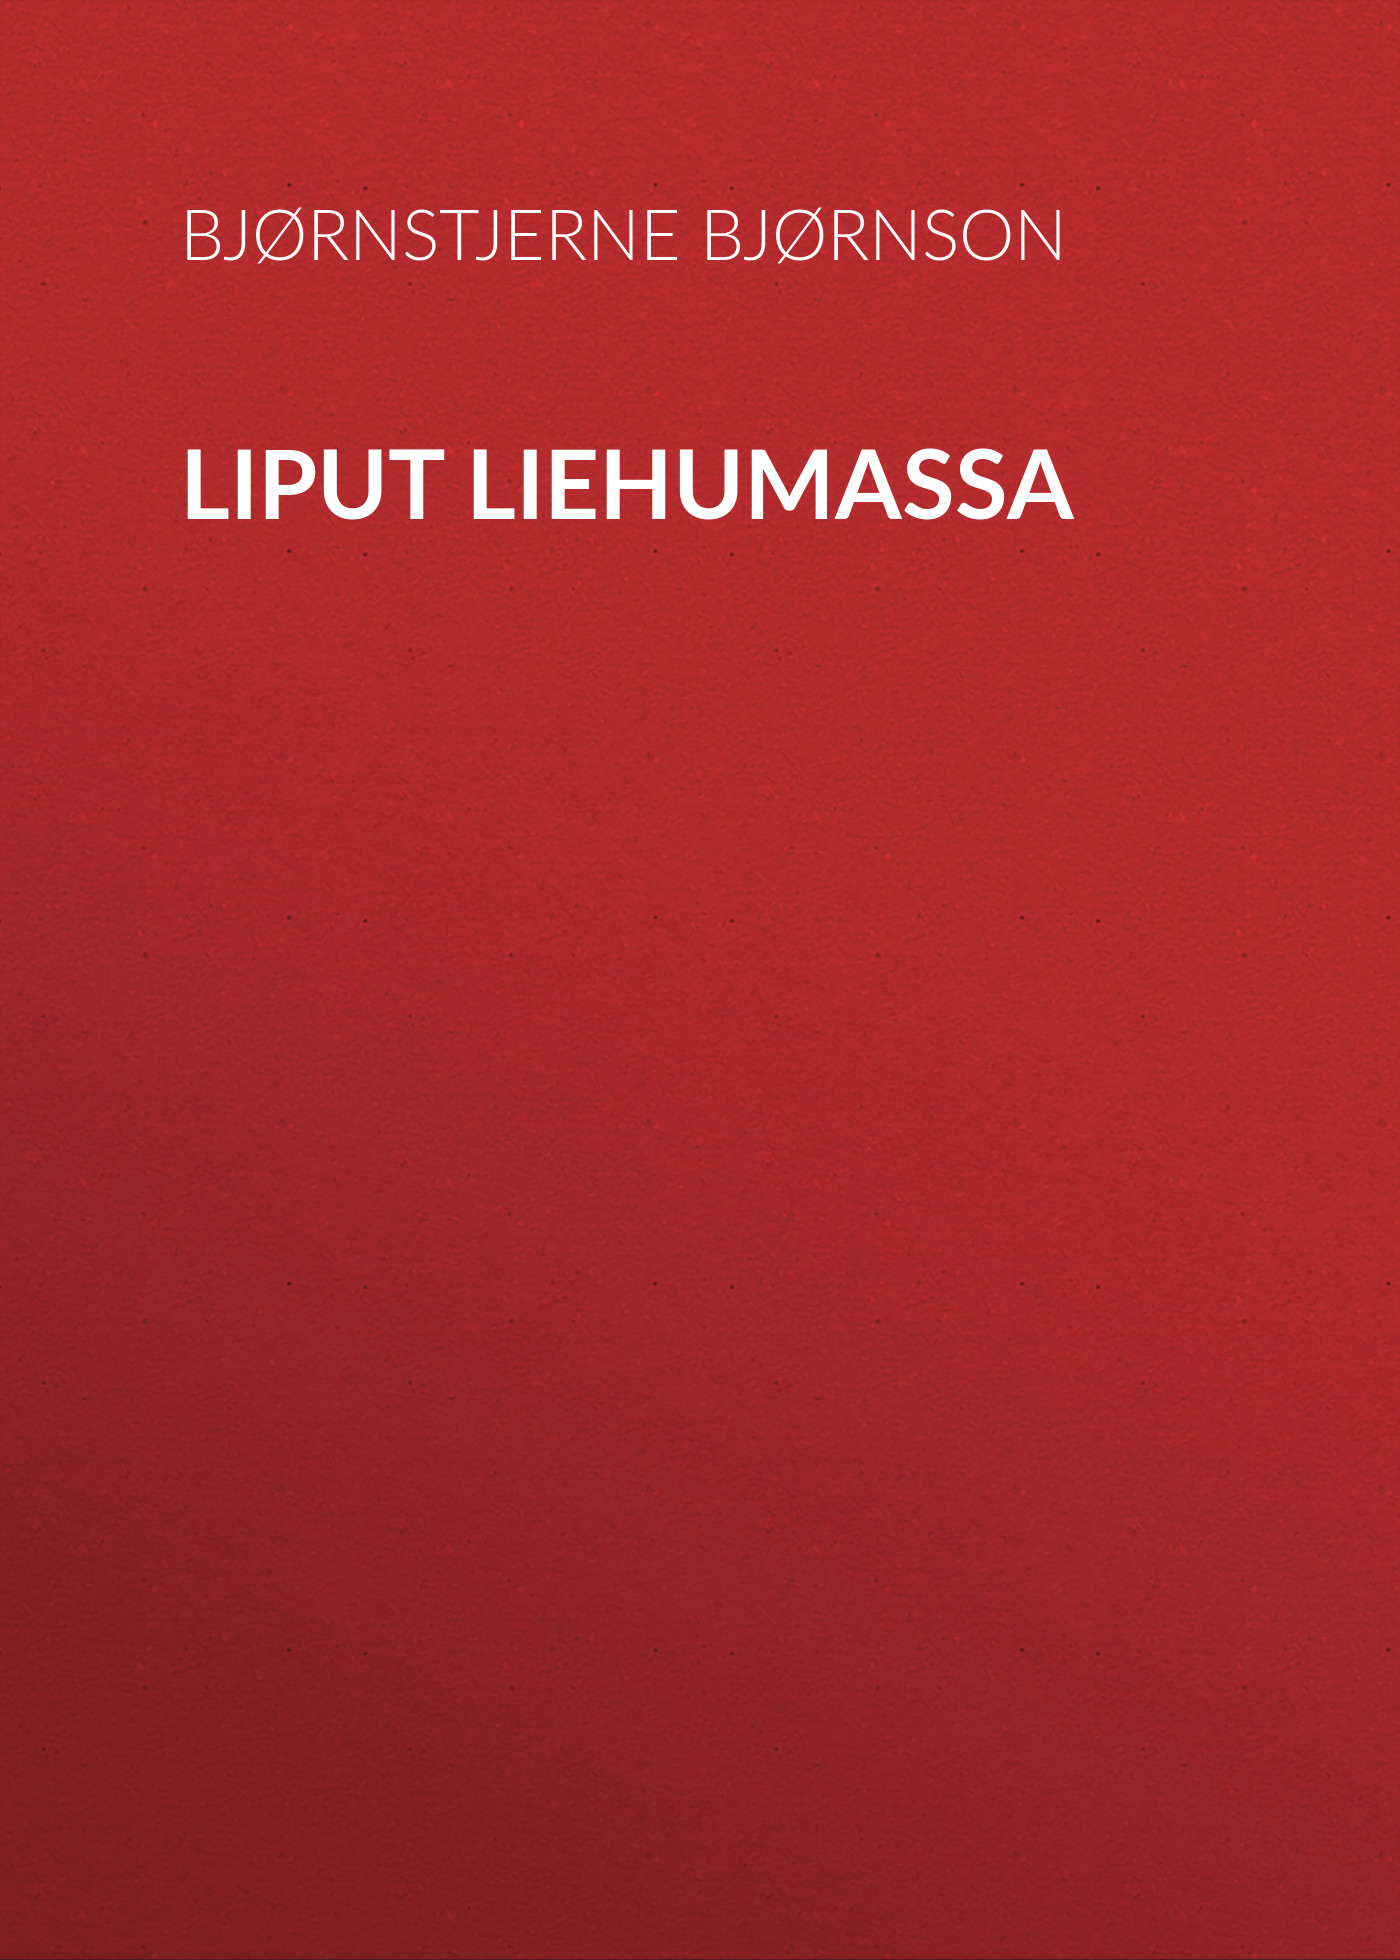 Книга Liput liehumassa из серии , созданная Bjørnstjerne Bjørnson, может относится к жанру Зарубежная старинная литература, Зарубежная классика. Стоимость электронной книги Liput liehumassa с идентификатором 24178604 составляет 0 руб.